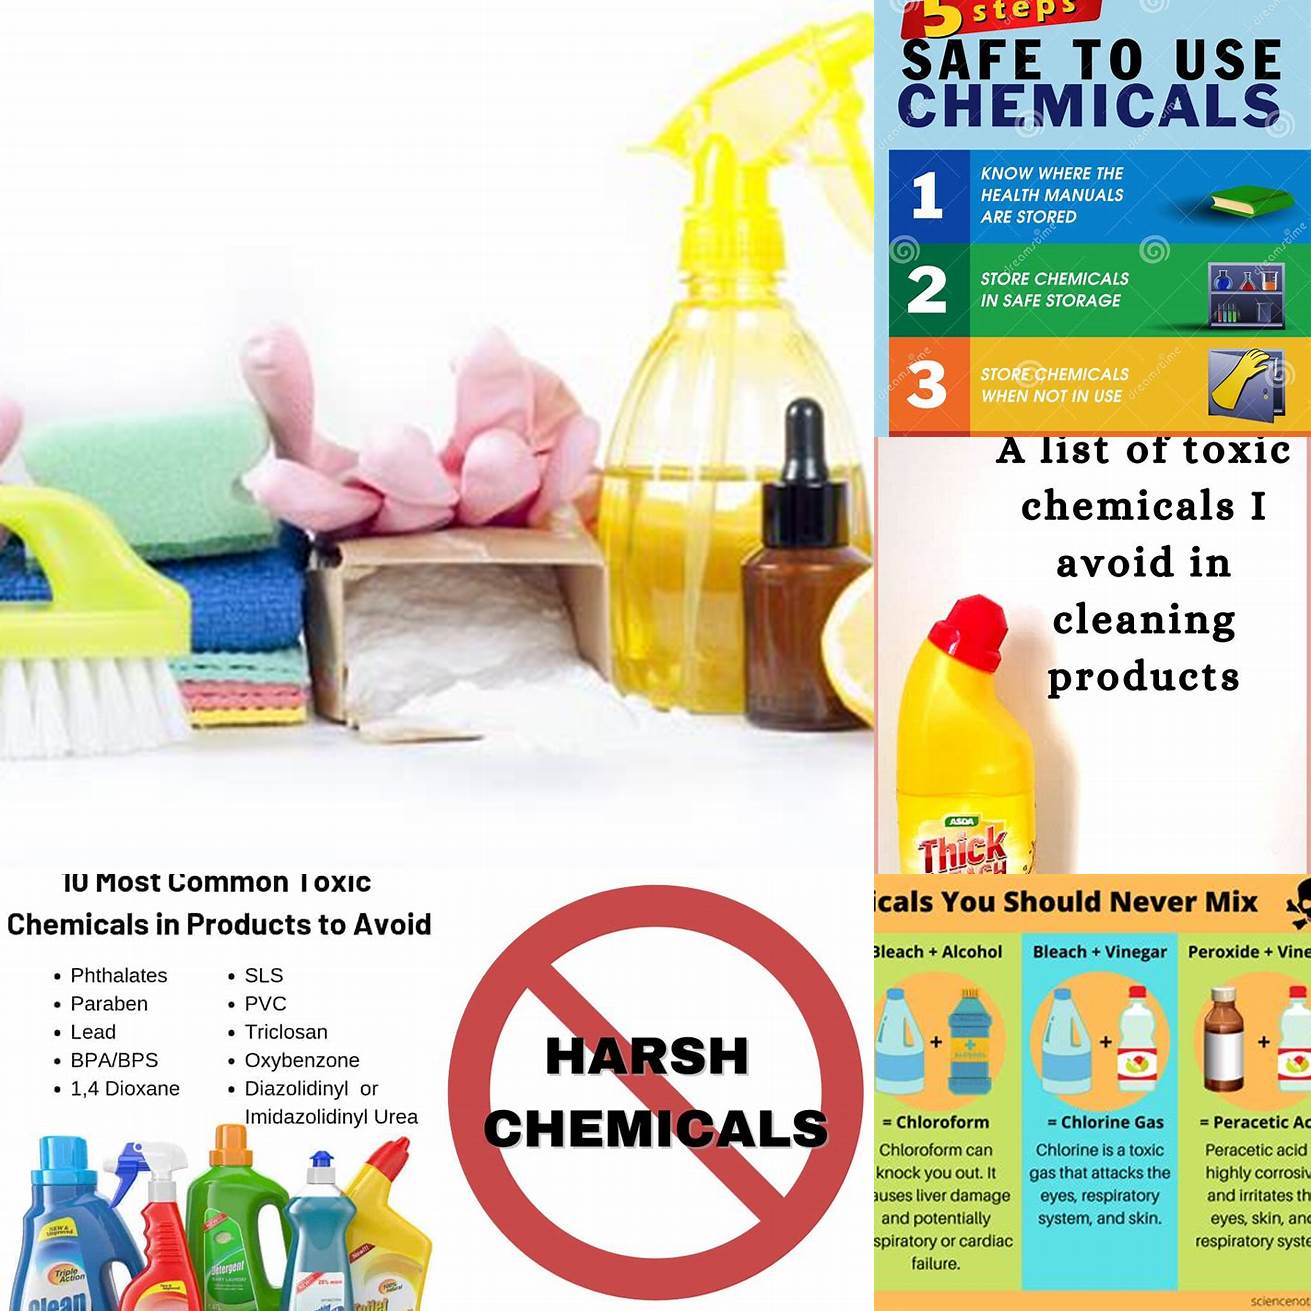 Avoid harsh chemicals